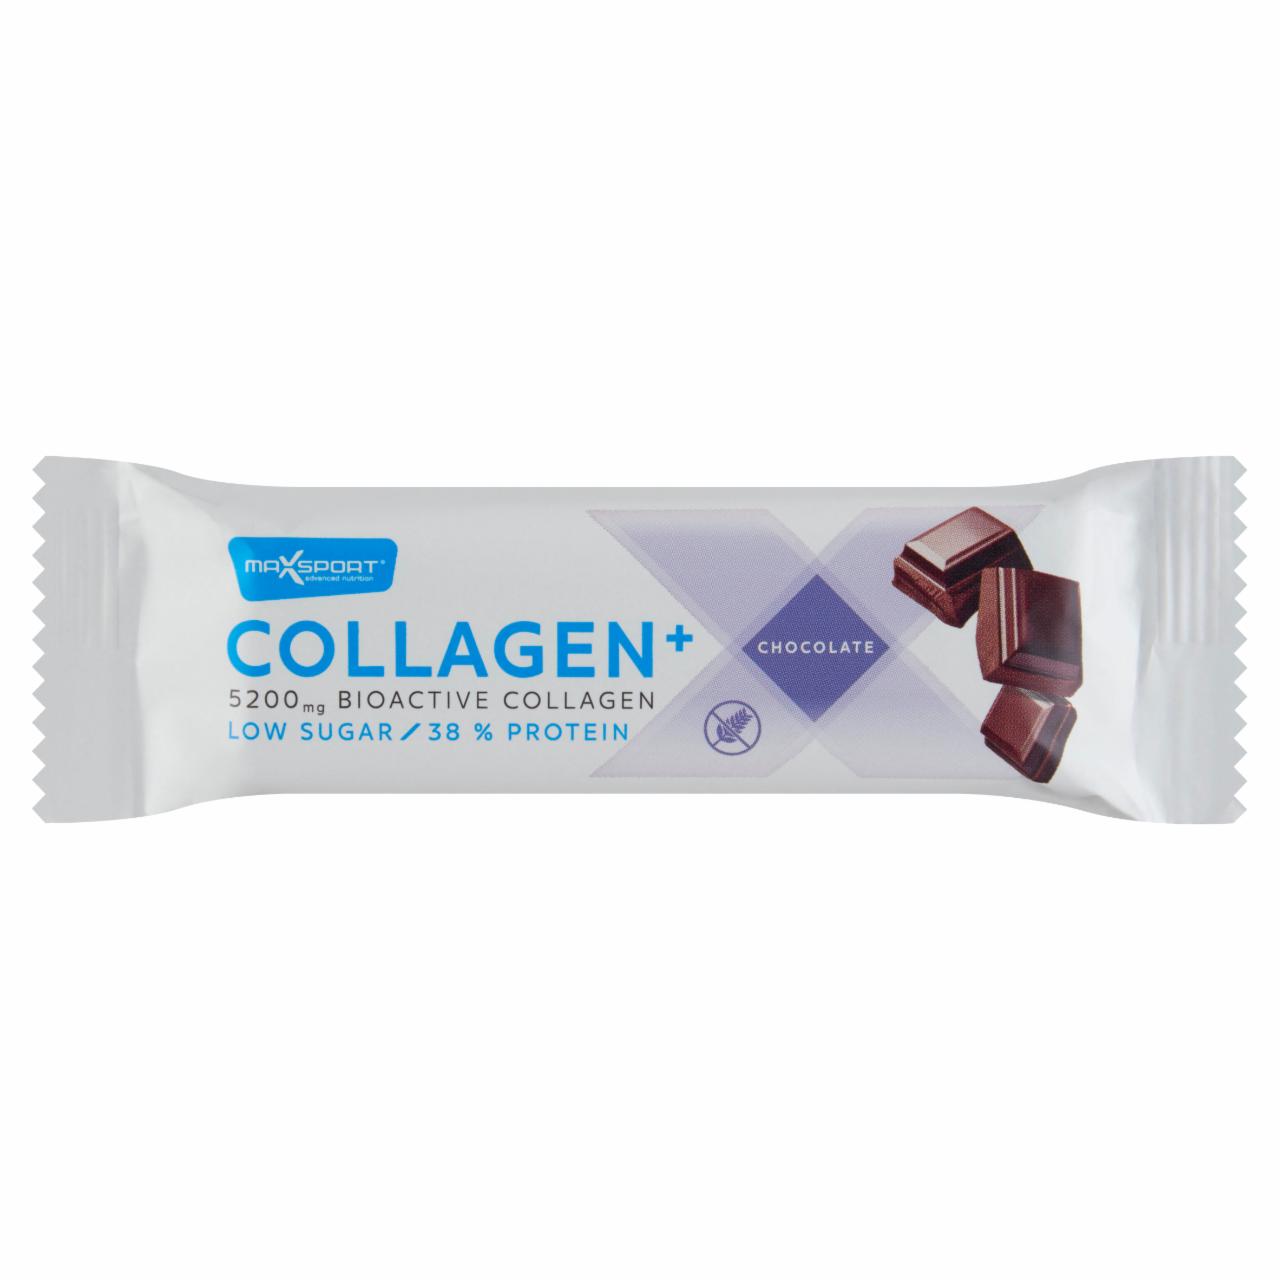 Képek - MaxSport Collagen+ protein szelet csokoládéval és kollagénnel, tejcsokoládé bevonatban 40 g